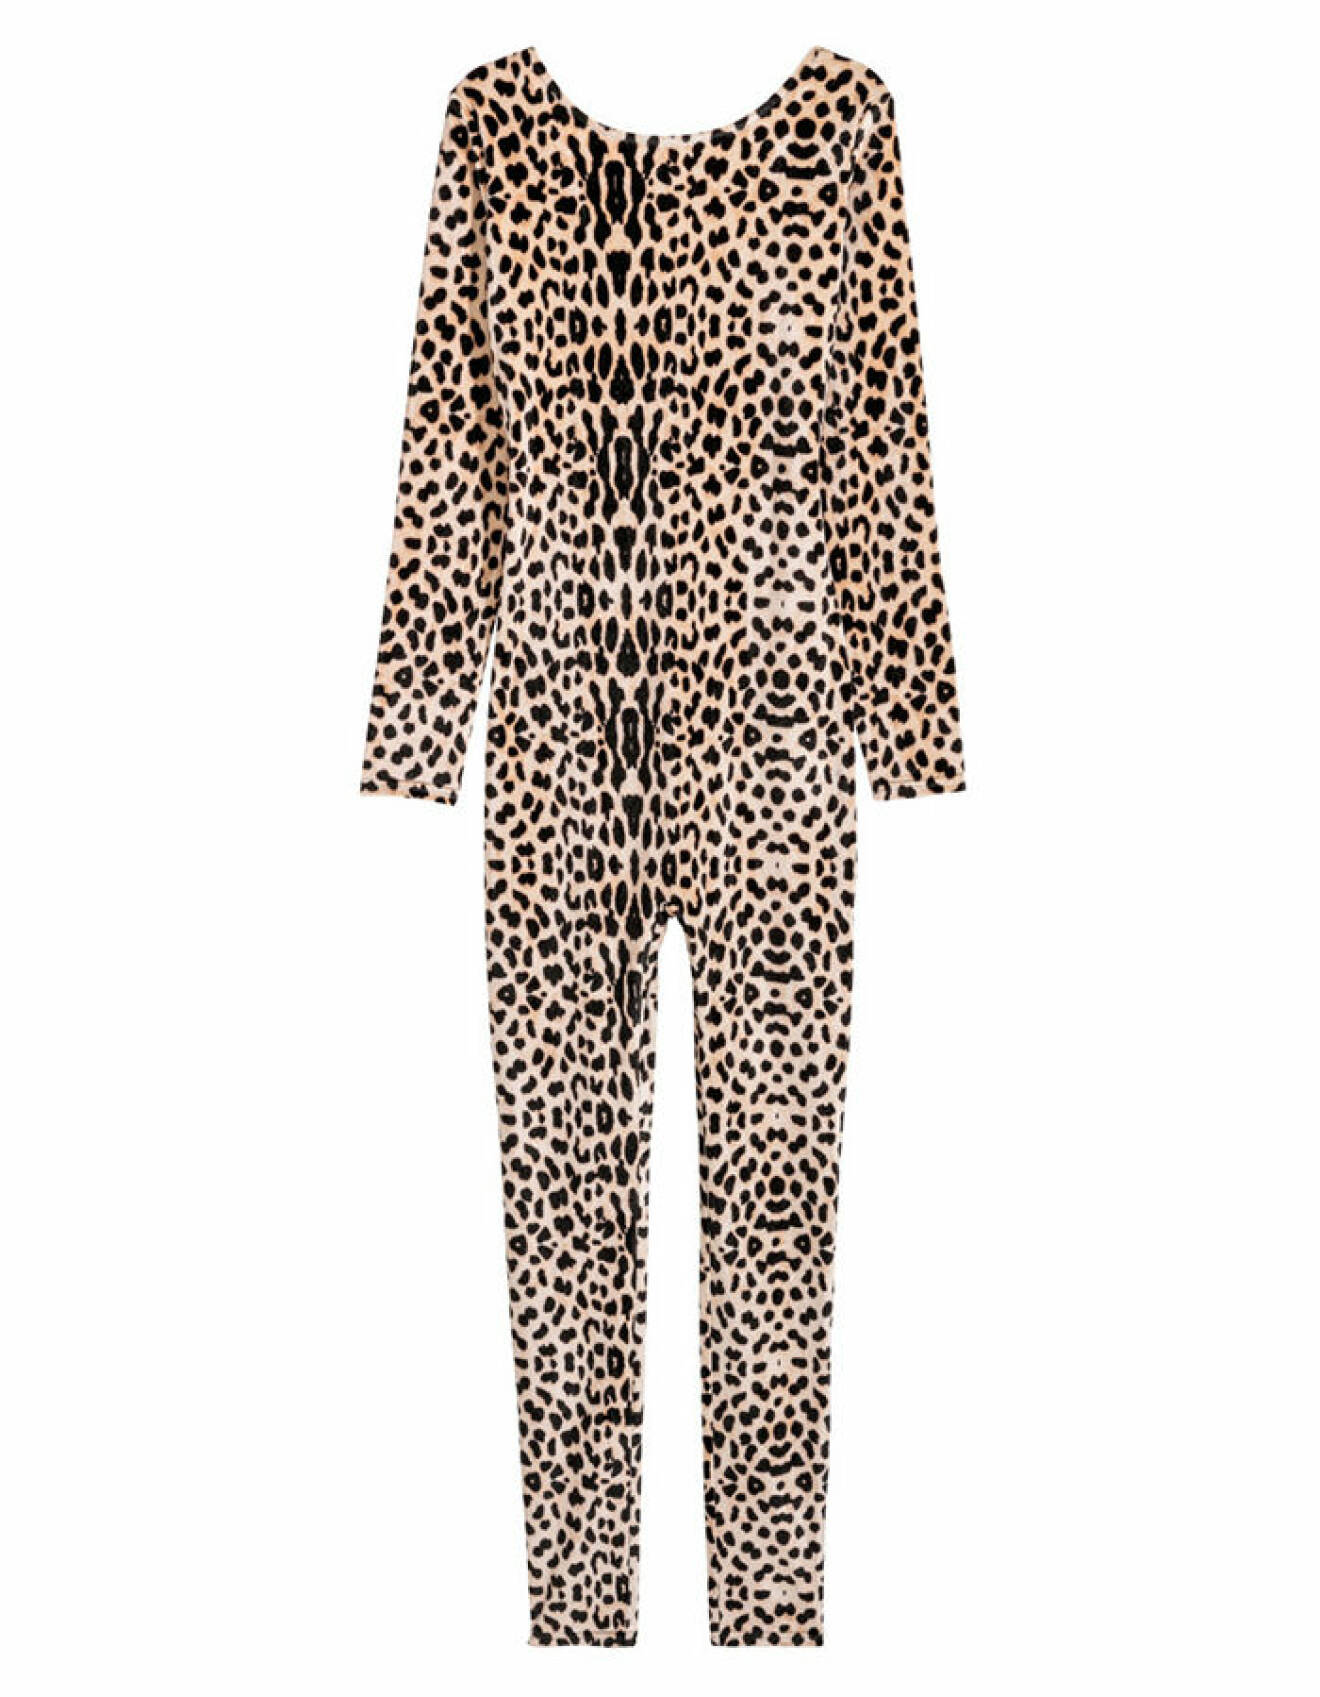 Leoparddräkt i velour från H&M inför halloween.